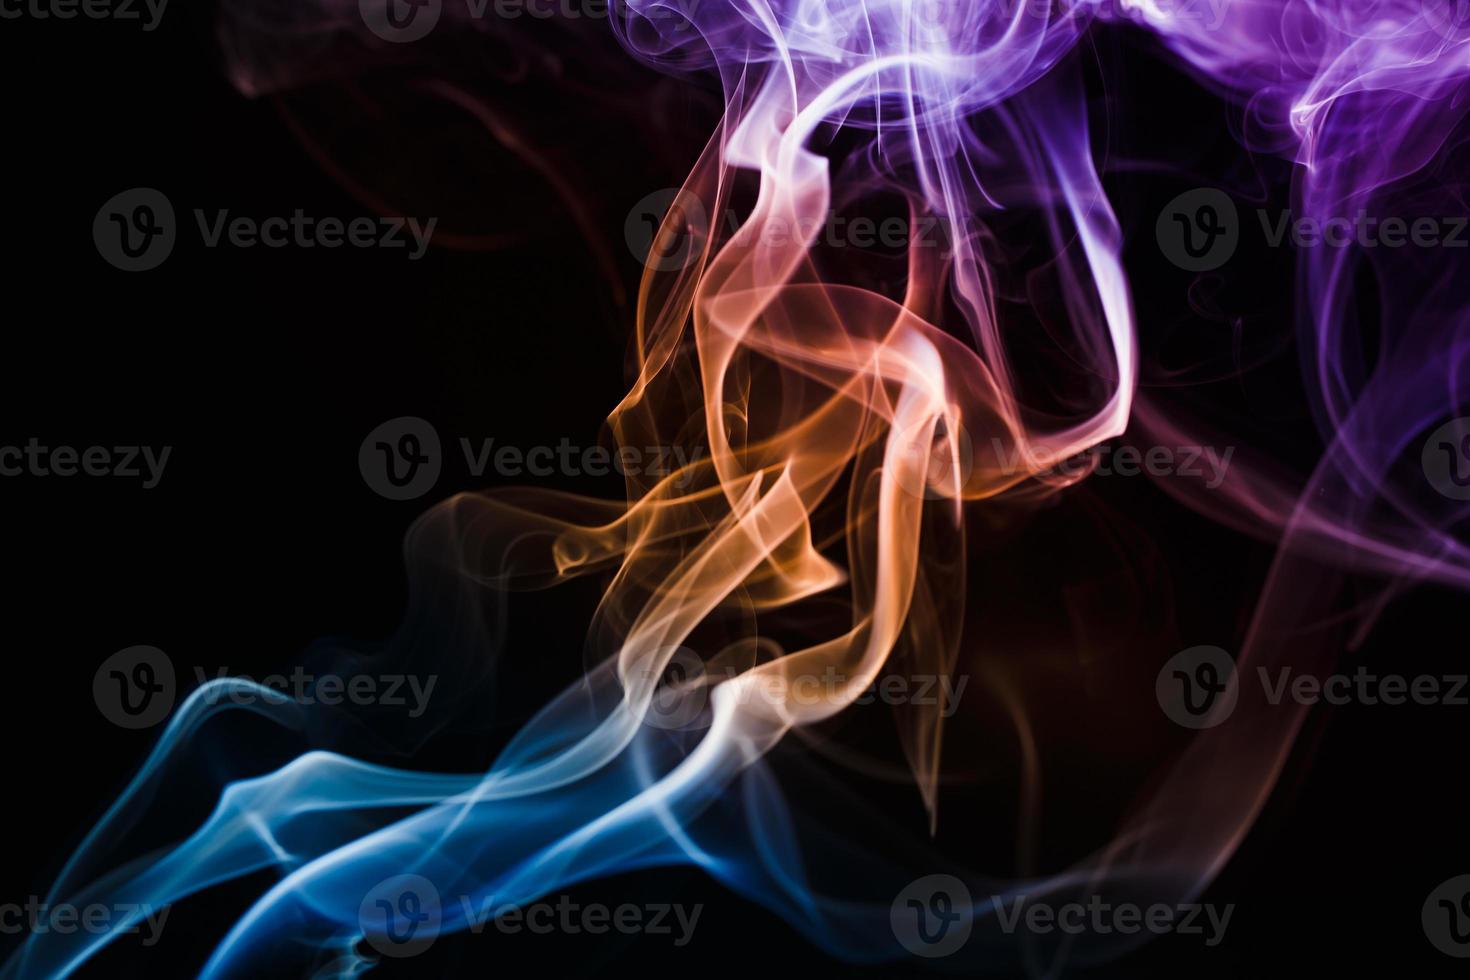 fumaça flutuando em fundo escuro foto